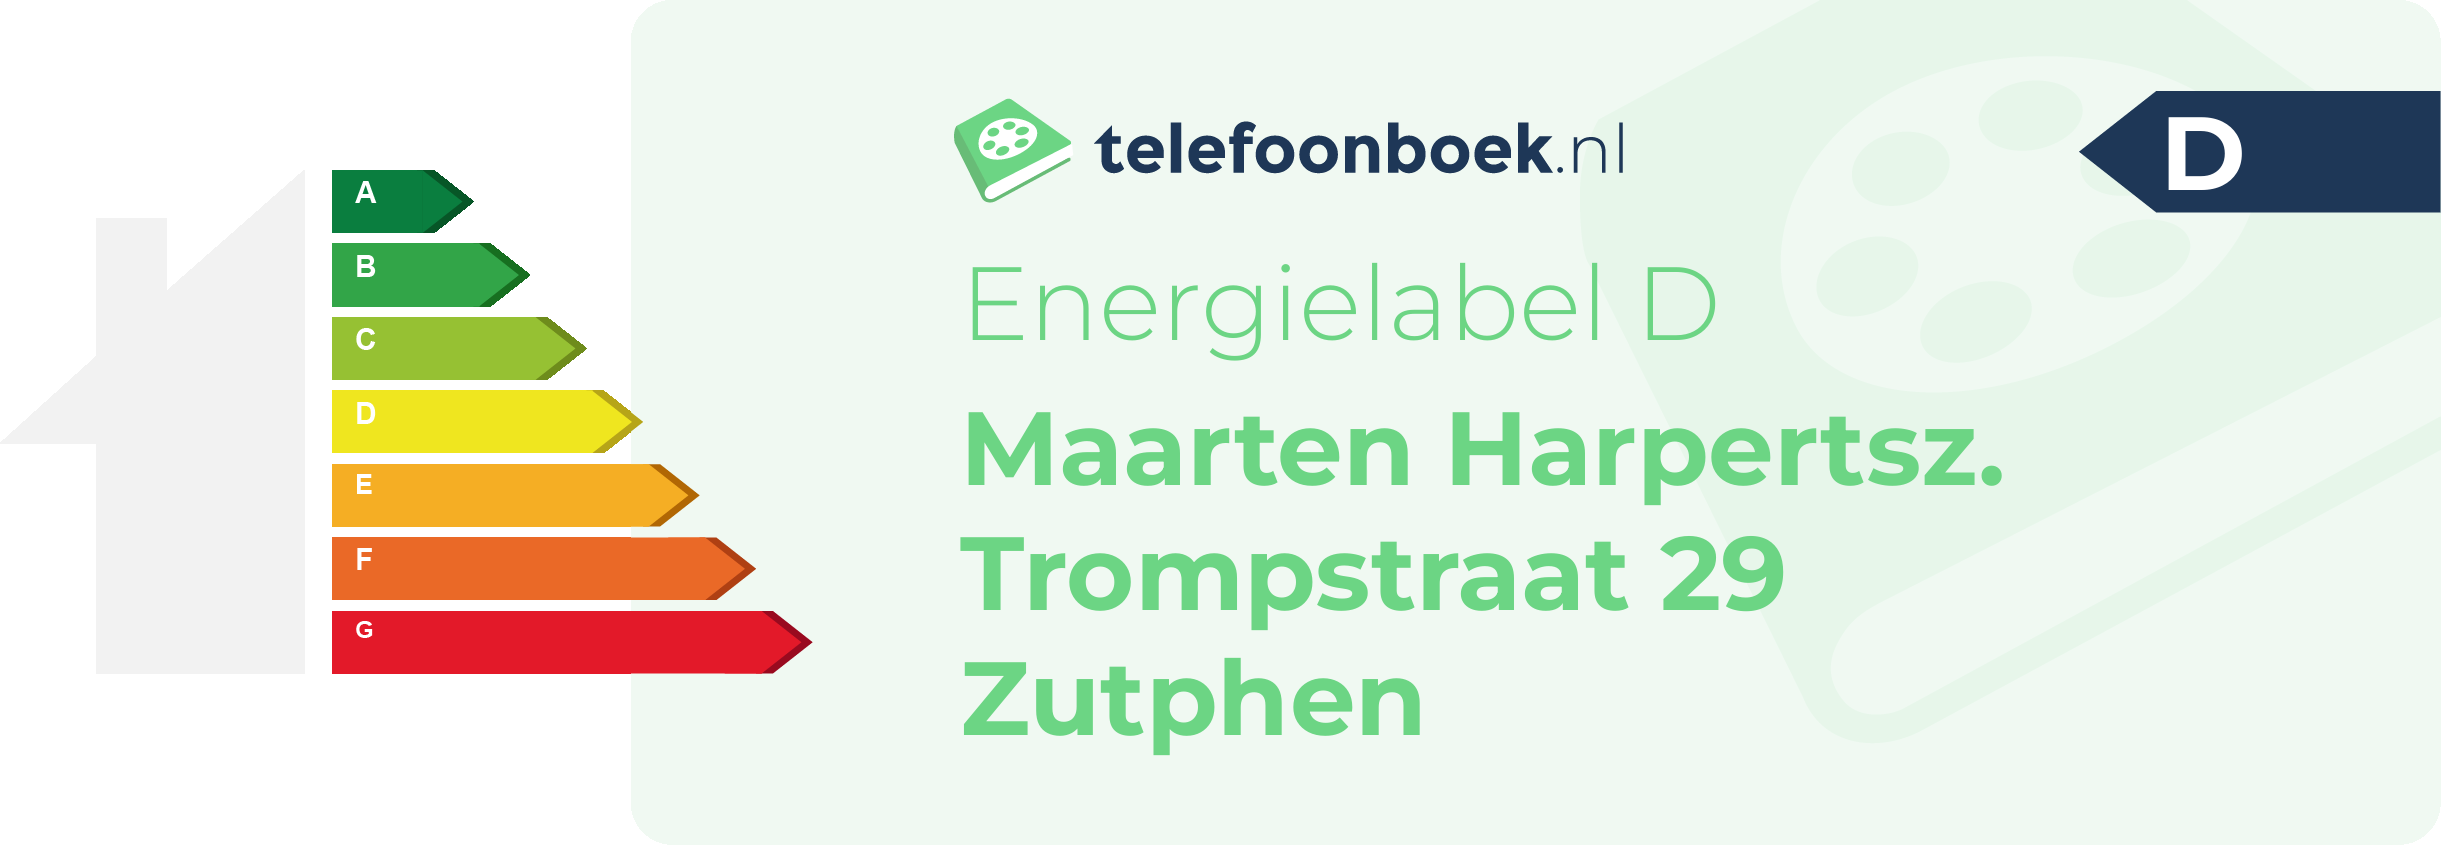 Energielabel Maarten Harpertsz. Trompstraat 29 Zutphen